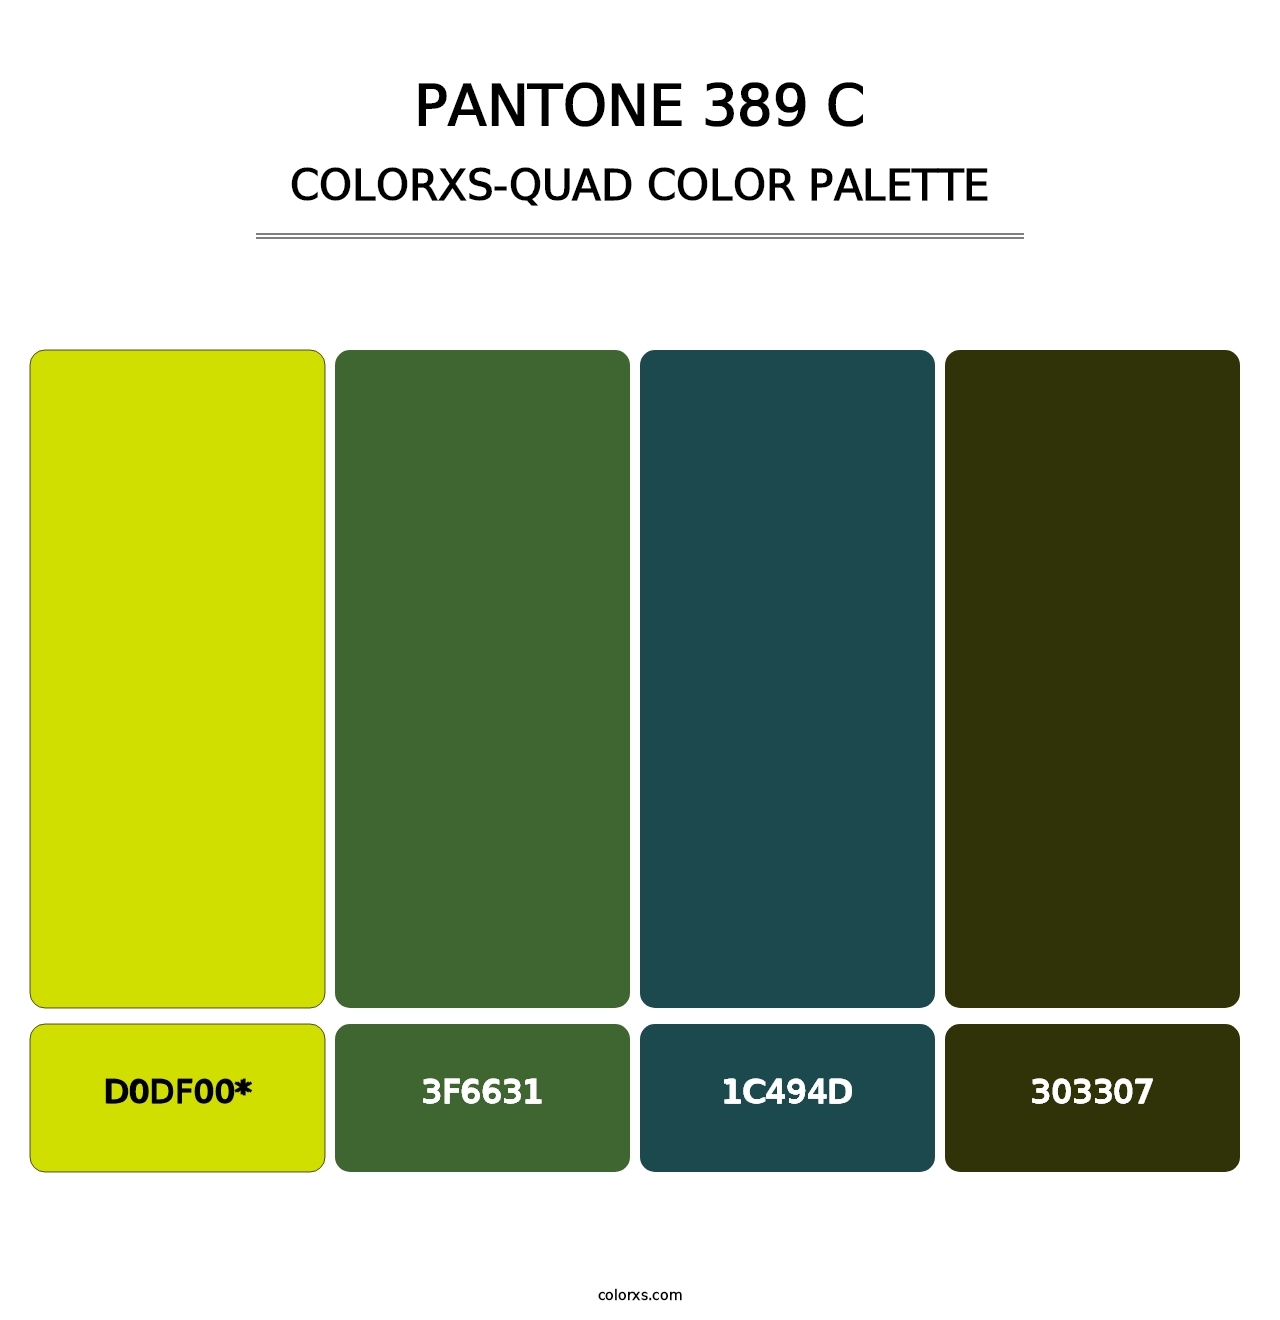 PANTONE 389 C - Colorxs Quad Palette